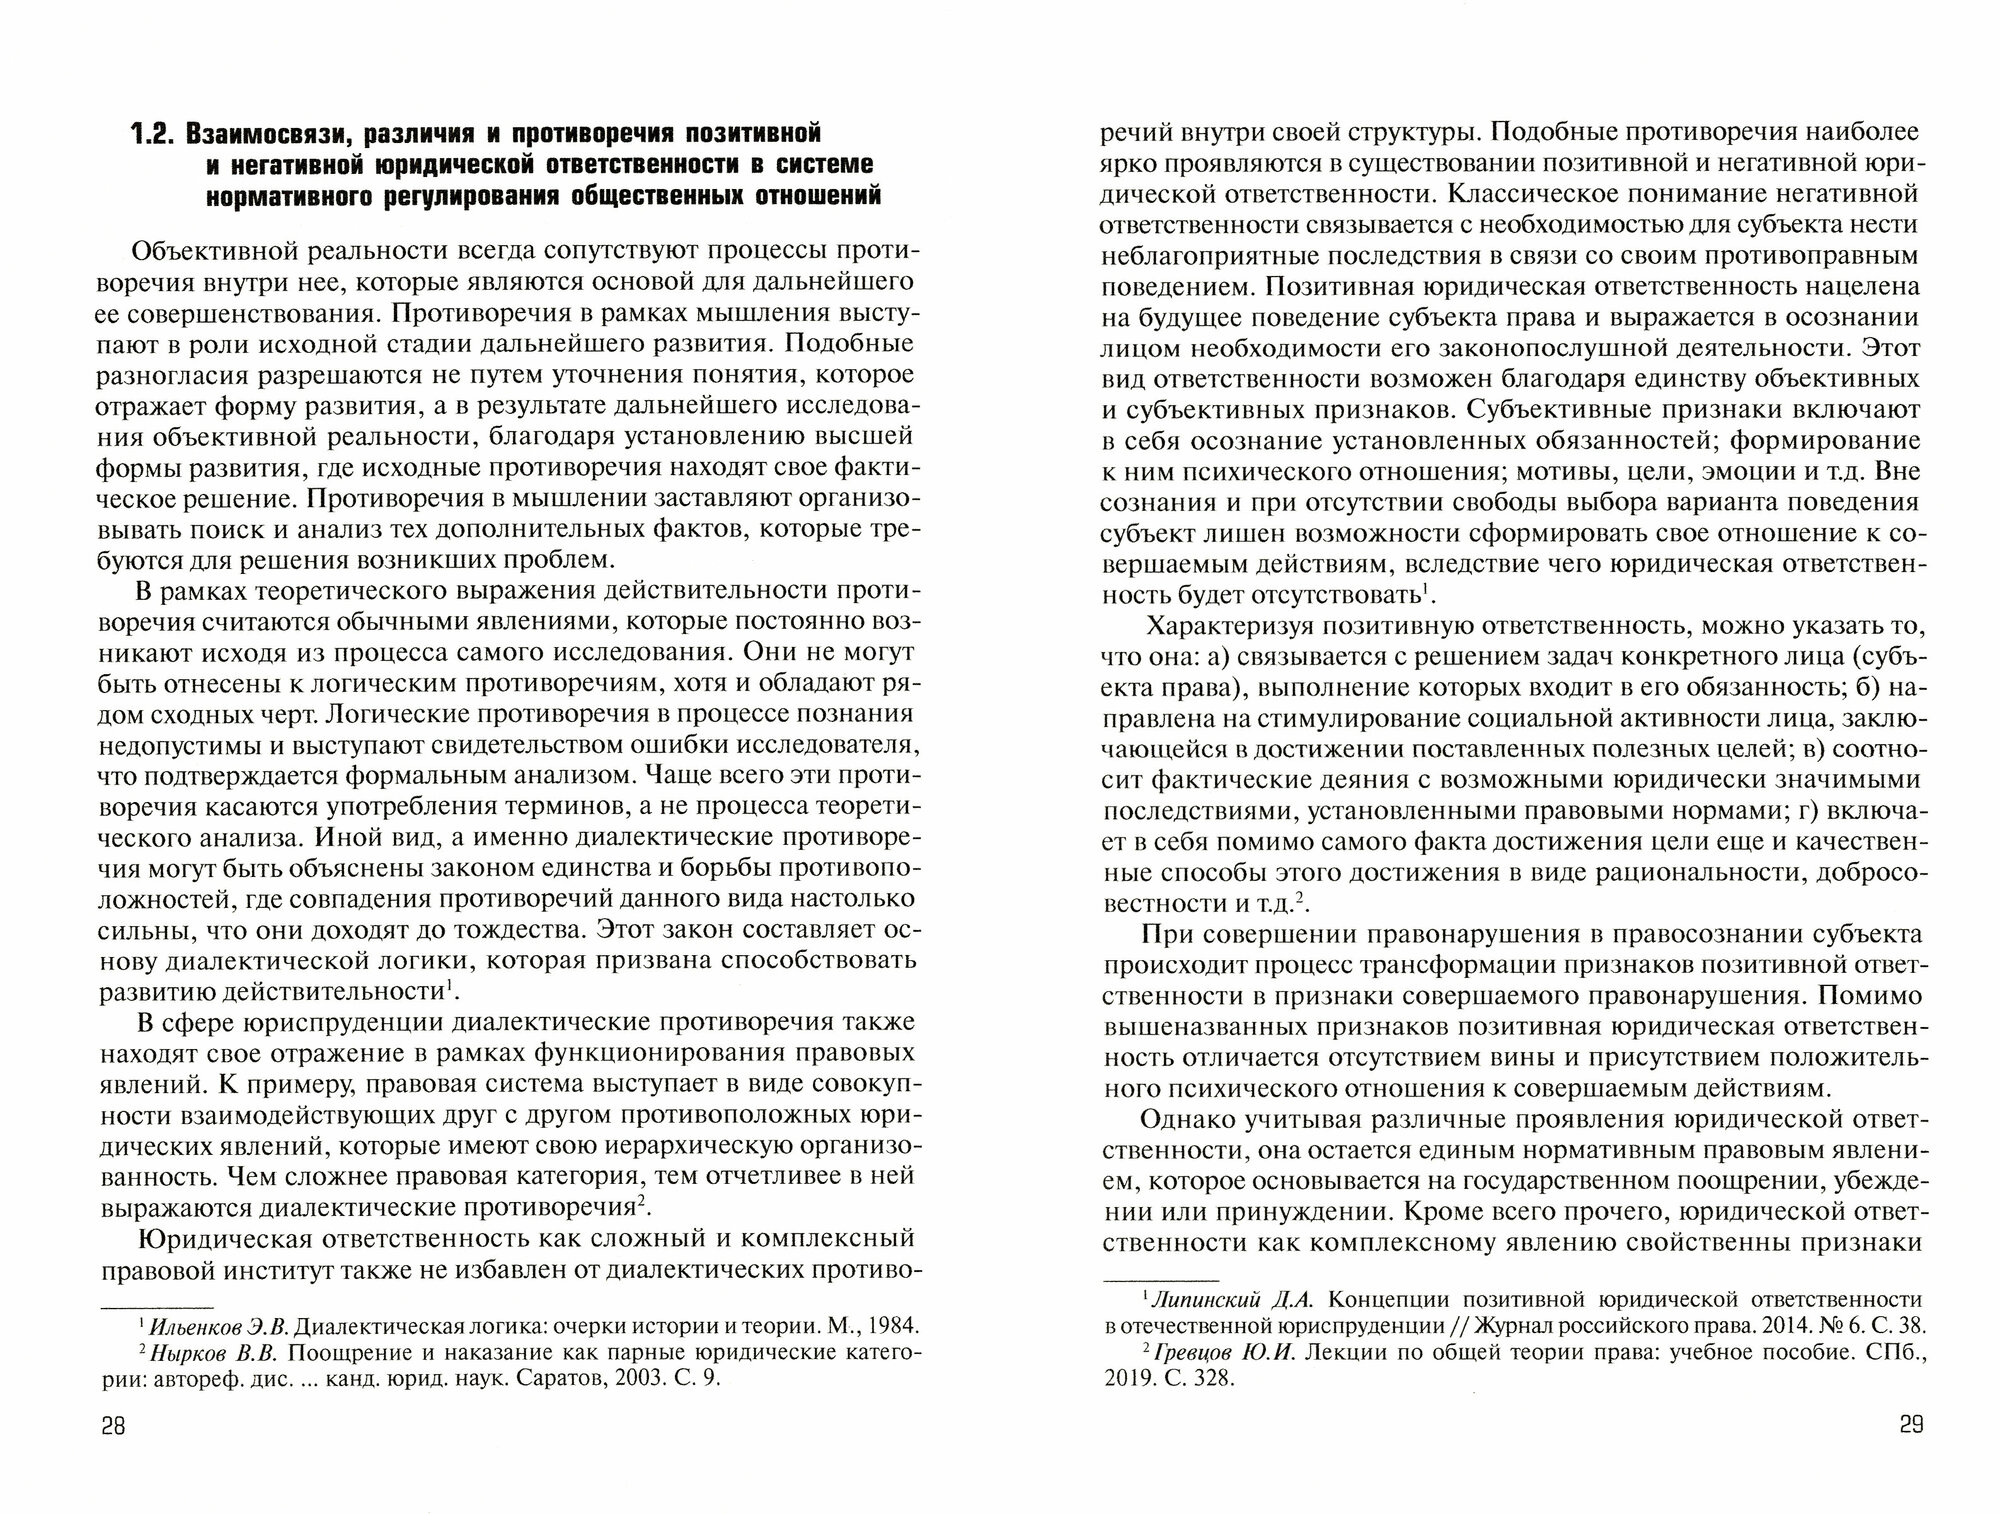 Юридическая ответственность в правовой системе России. Концепция взаимодействия, взаимосвязей - фото №3